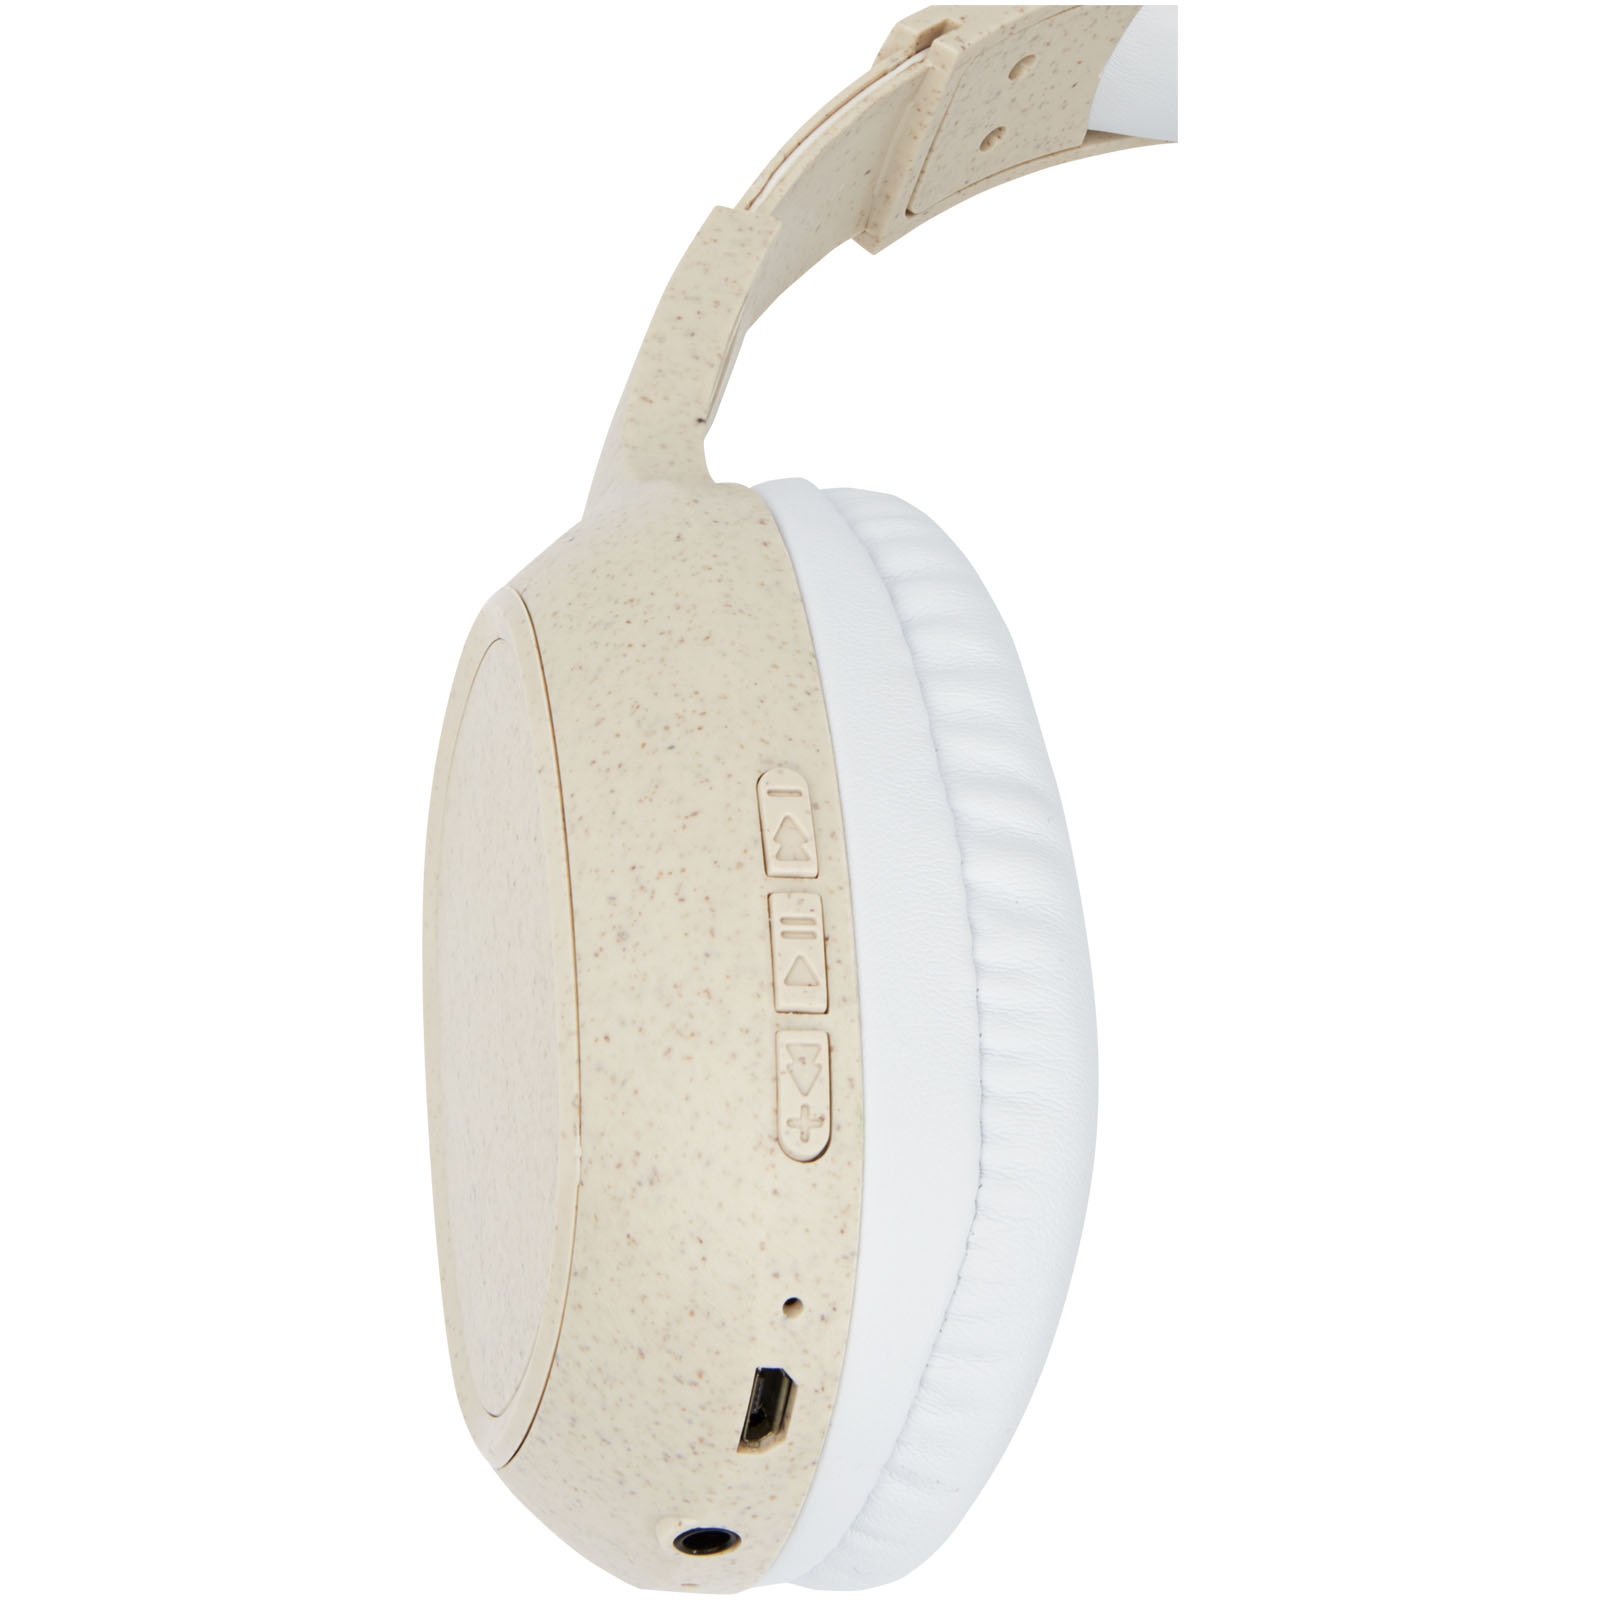 Casques publicitaires - Casque Bluetooth® Riff en paille de blé avec microphone - 4